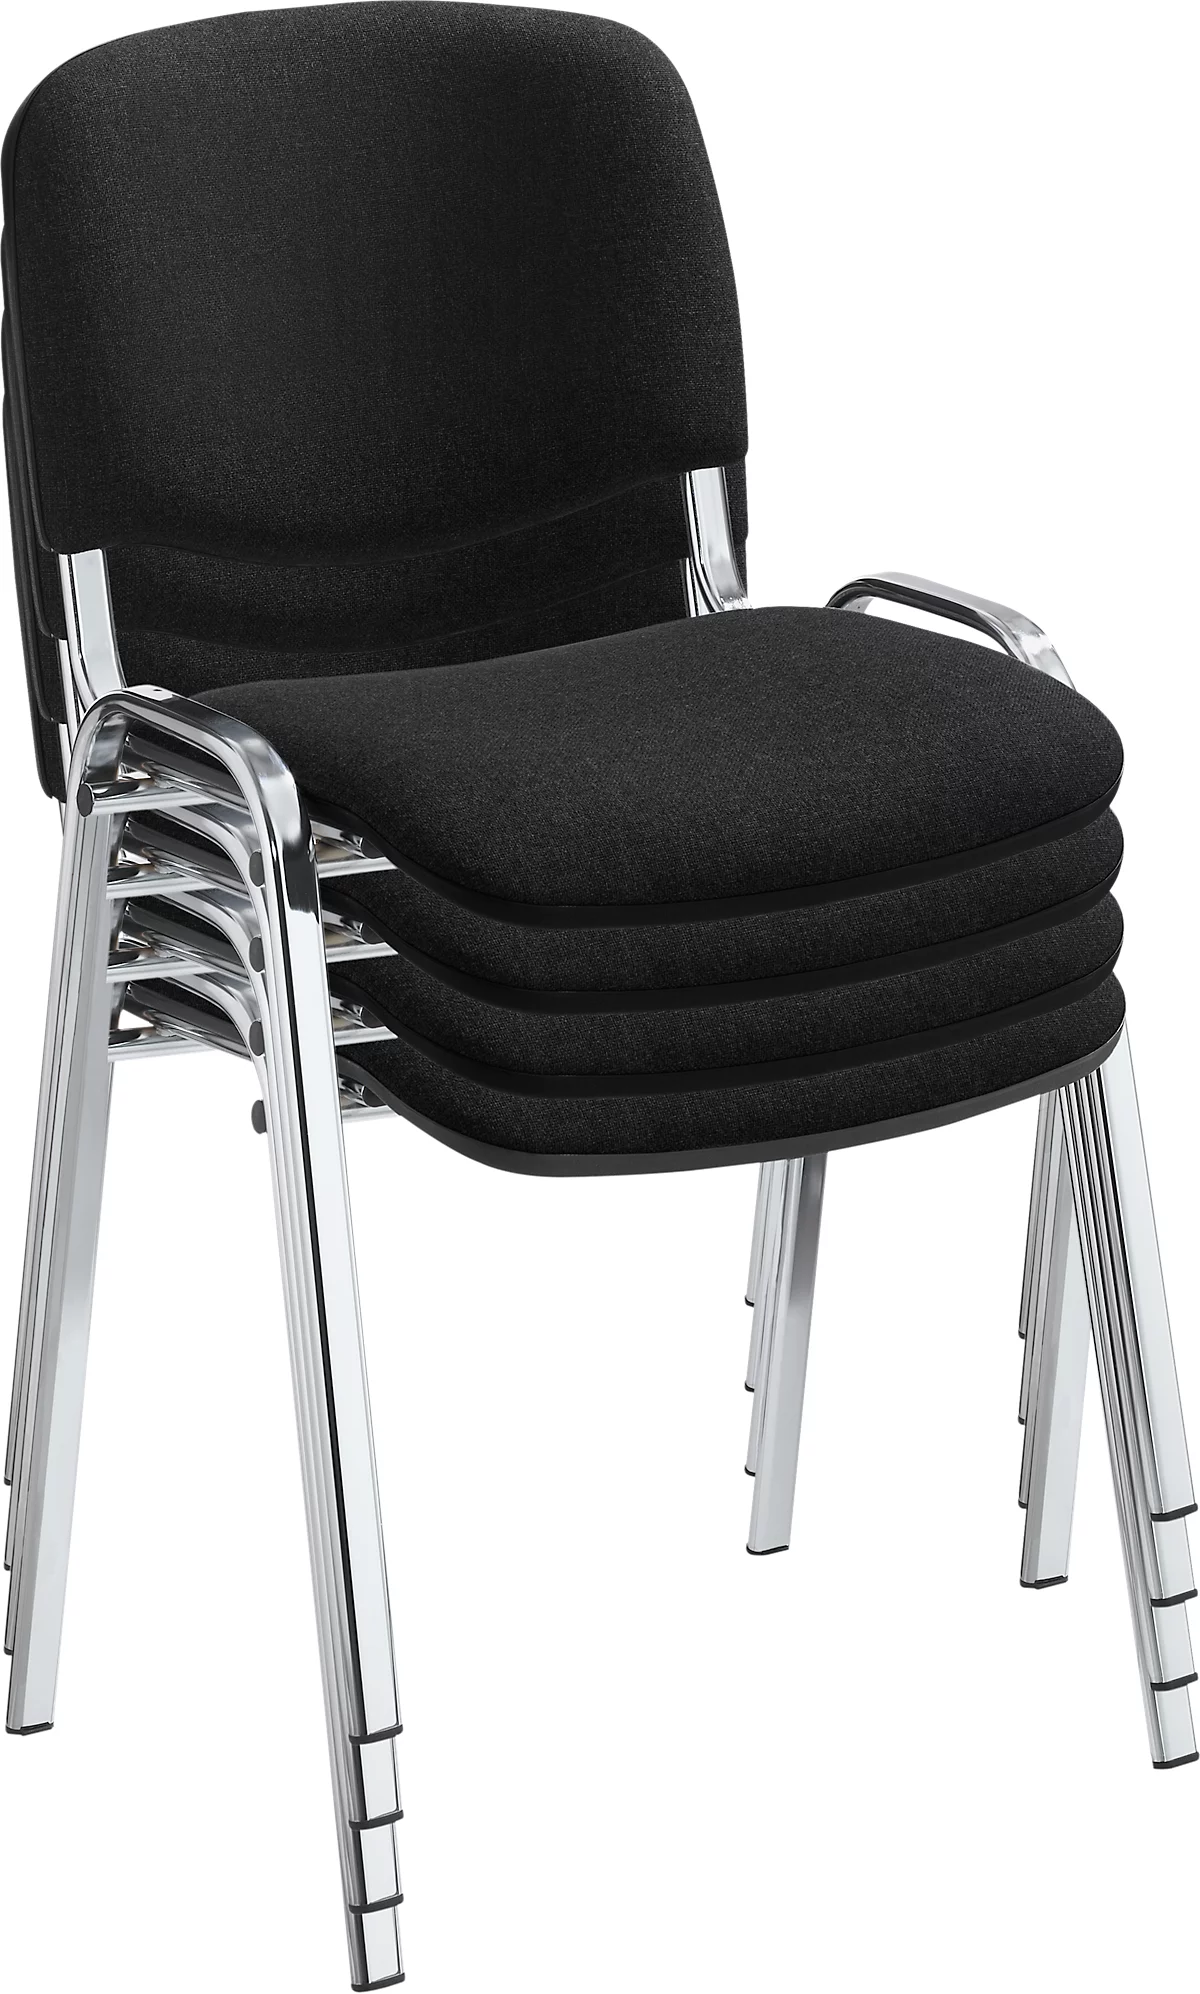 Juego de sillas apilables NowyStyl ISO BASIC, sin reposabrazos, apilables hasta 12 piezas, funda negra, armazón cromado plateado, 8 piezas